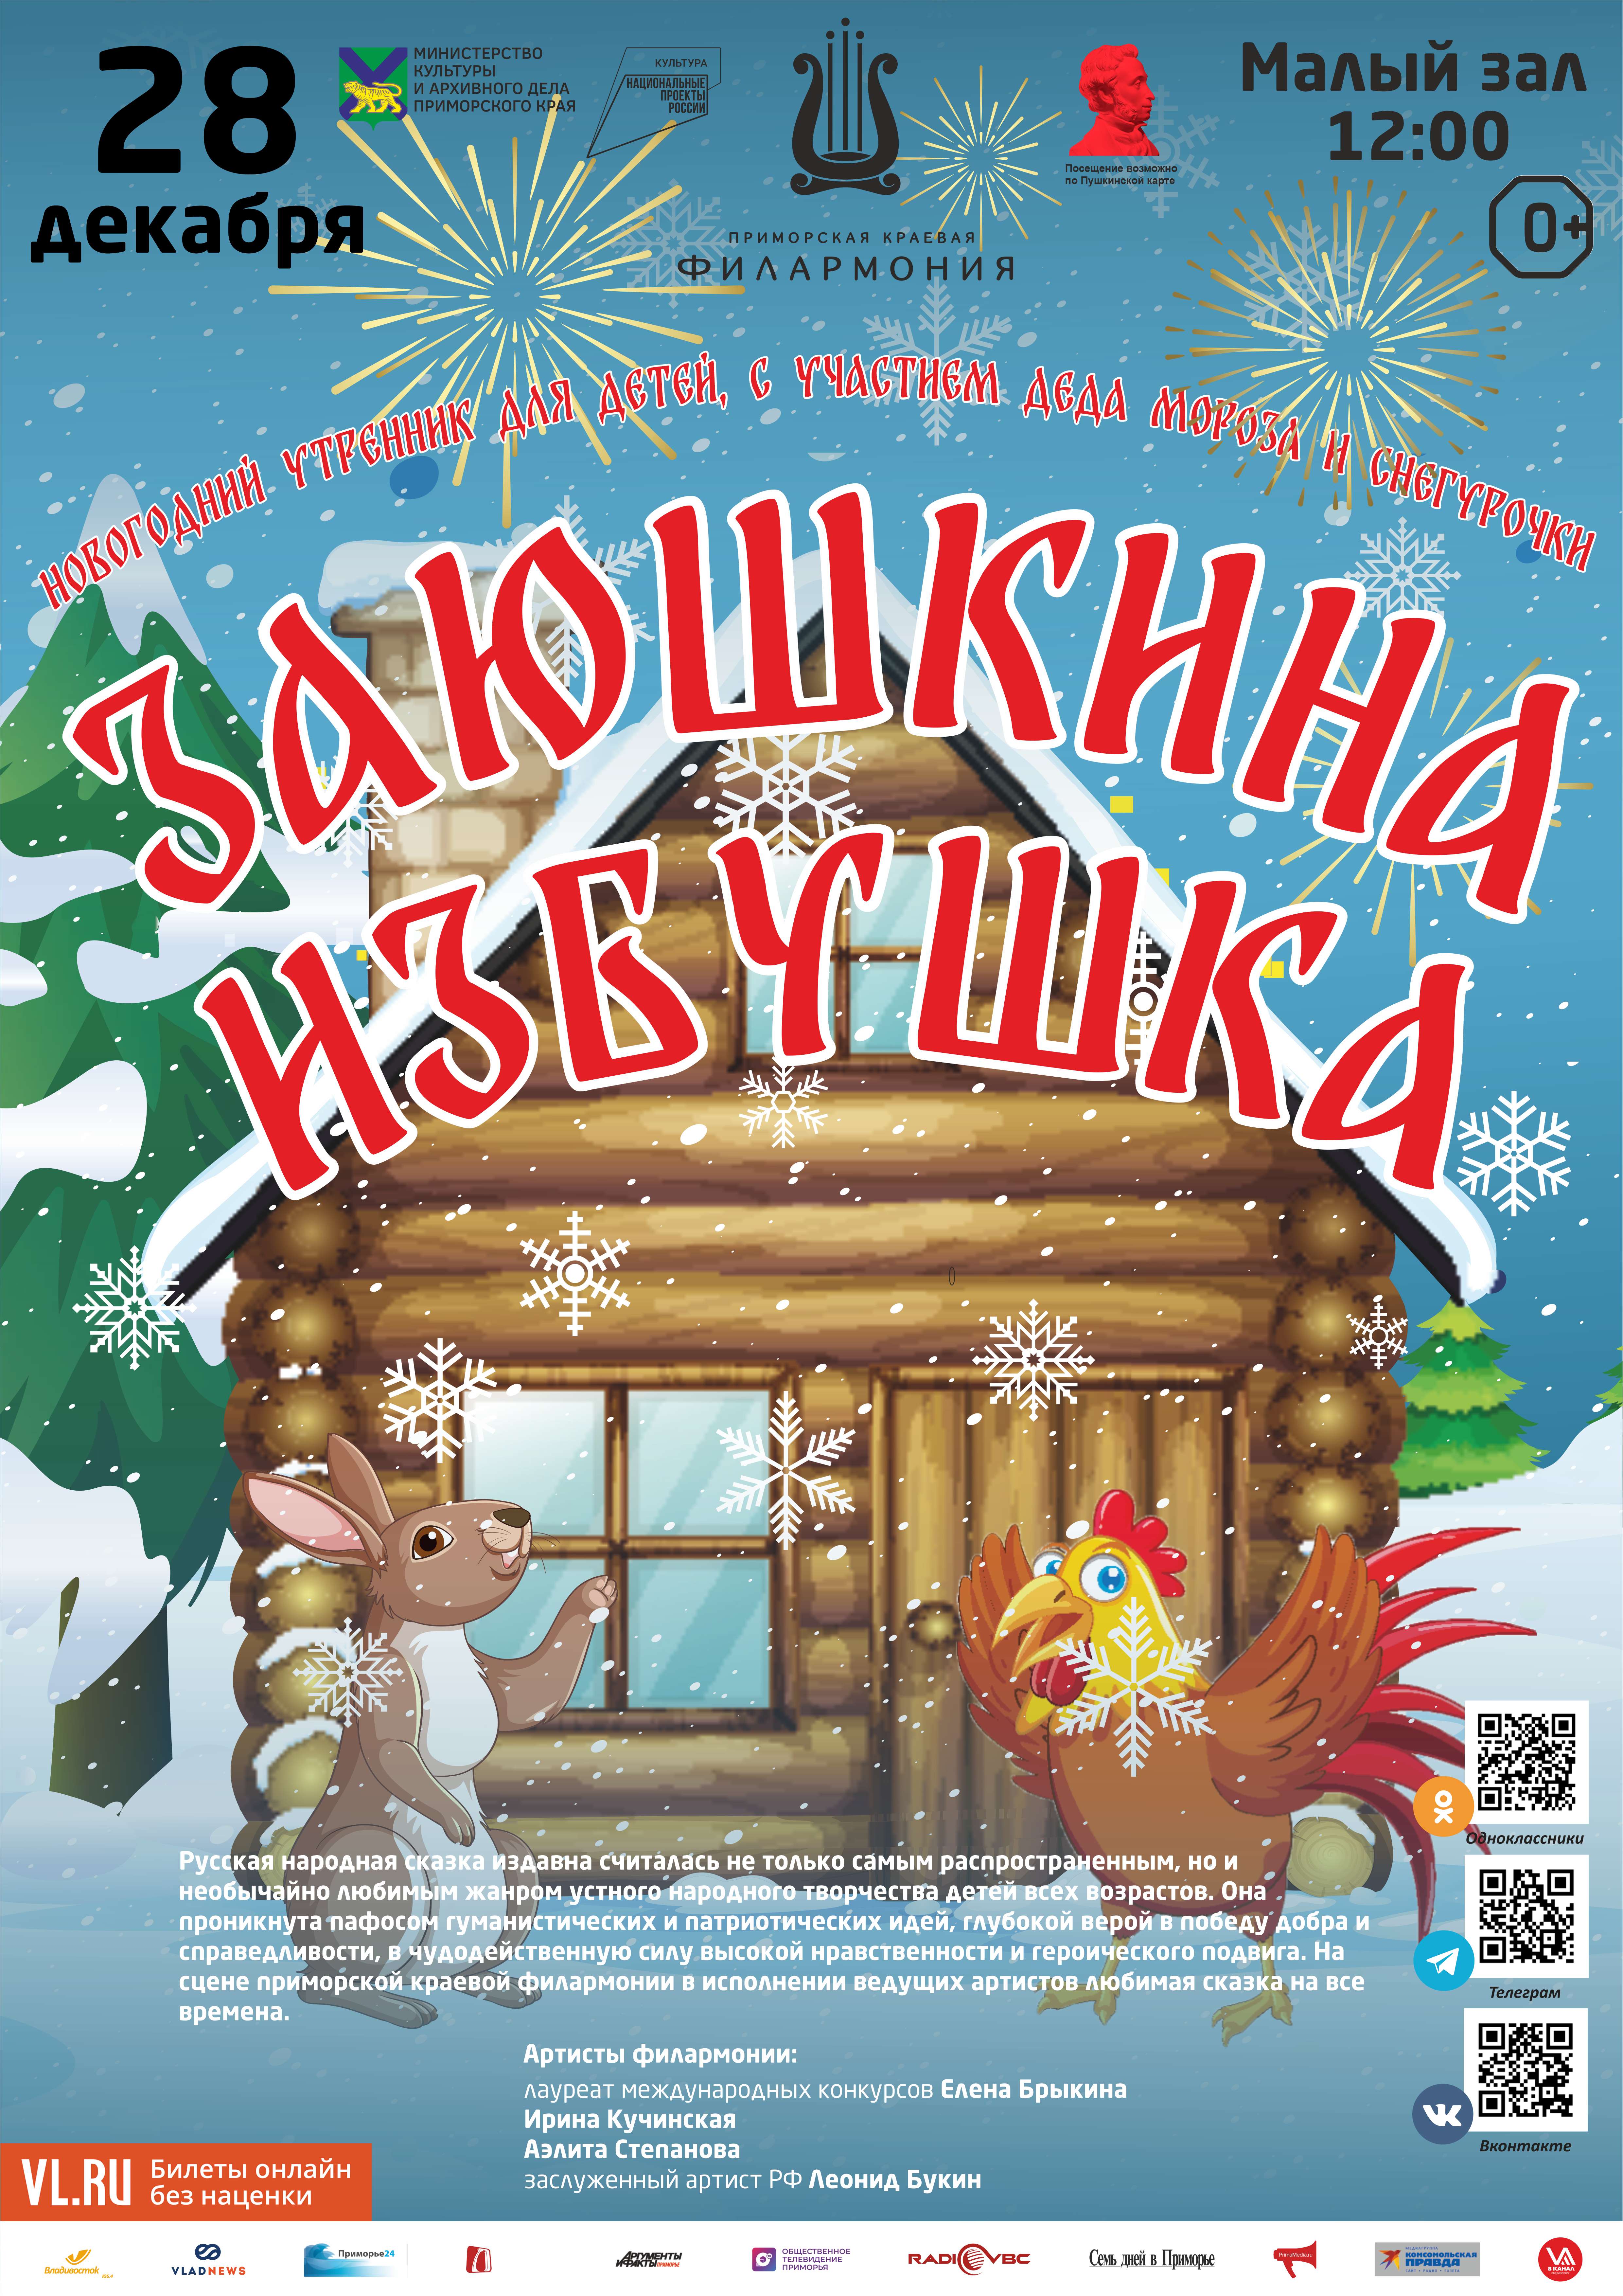 28 декабря Детская музыкальная программа «Заюшкина избушка» (по мотивам русской народной сказки)